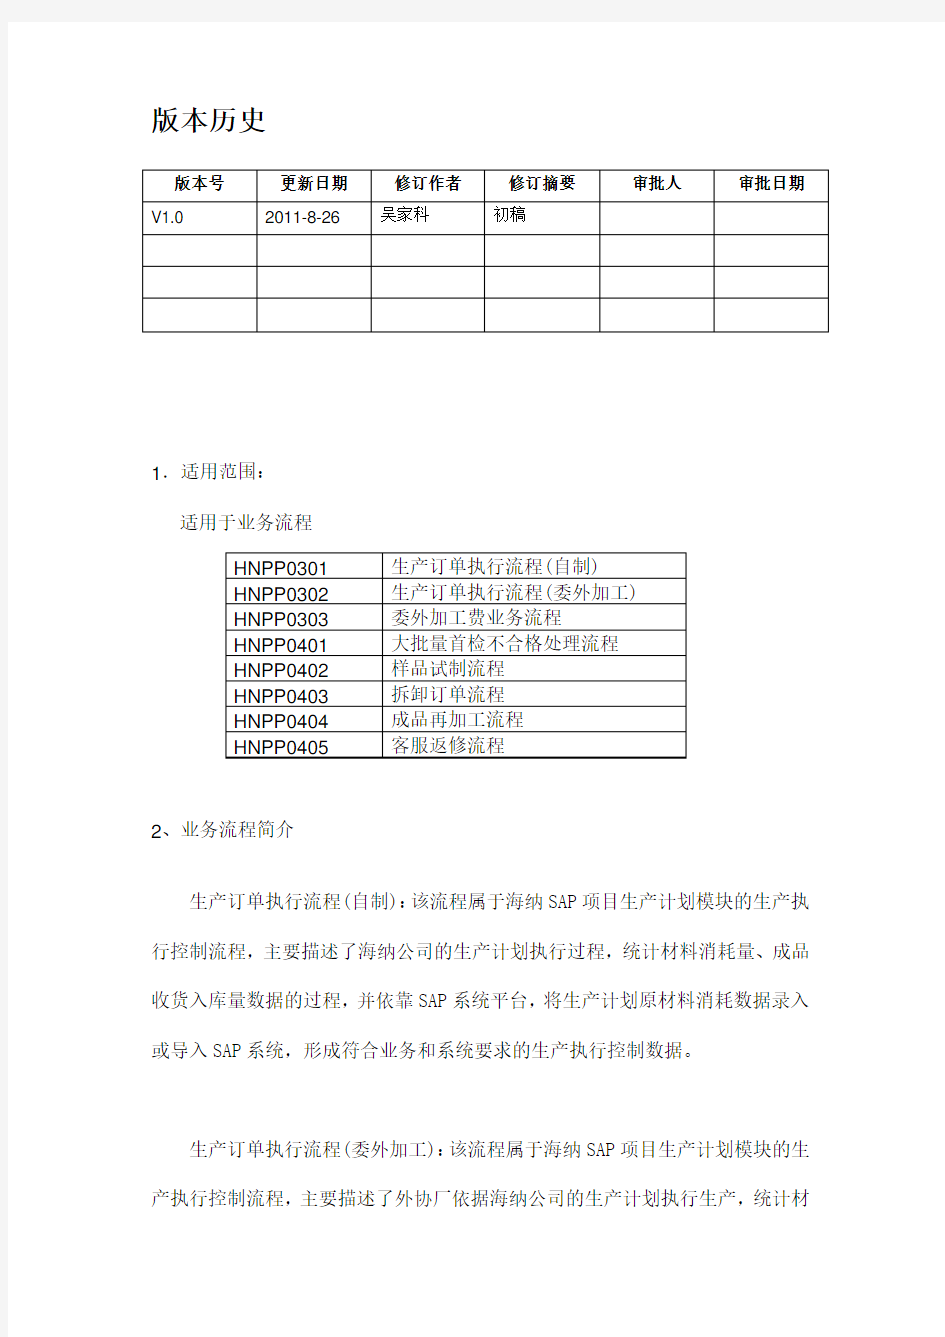 PP 14 生产订单技术关闭用户操作手册(CO02、COHV)吴家科